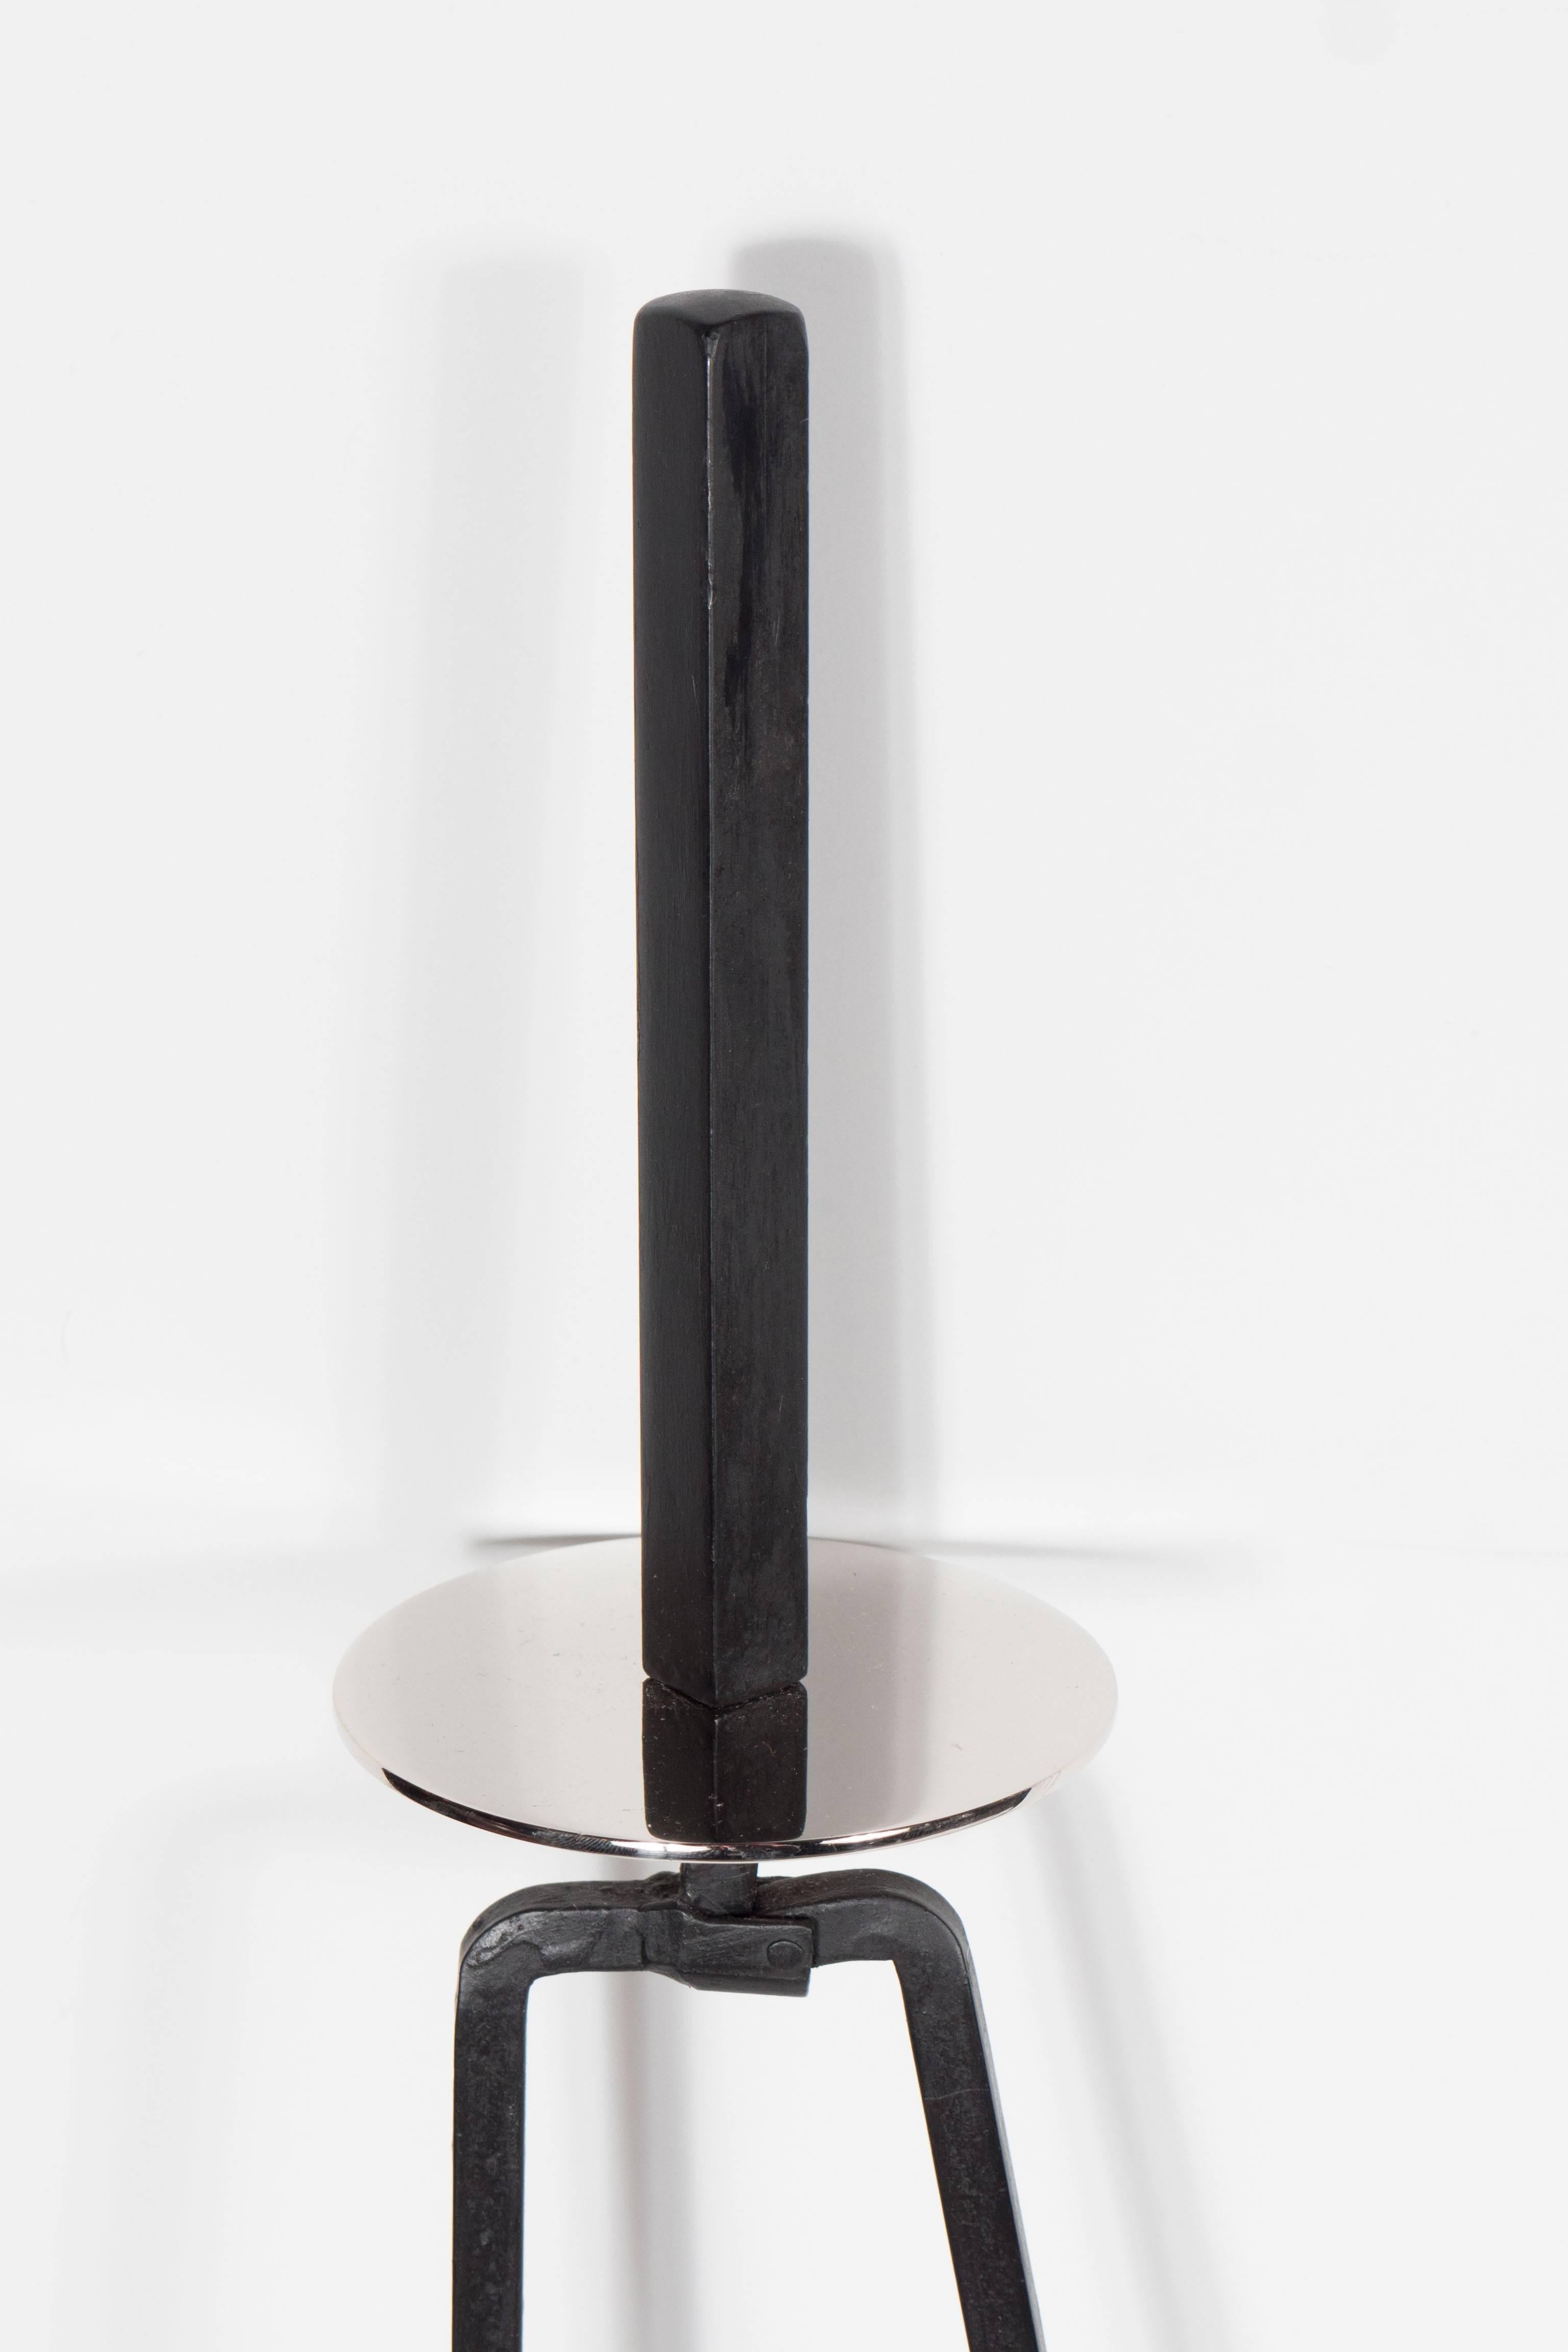 Enamel Mid-Century Modernist Fire Tool Set designed by Mel Bogart